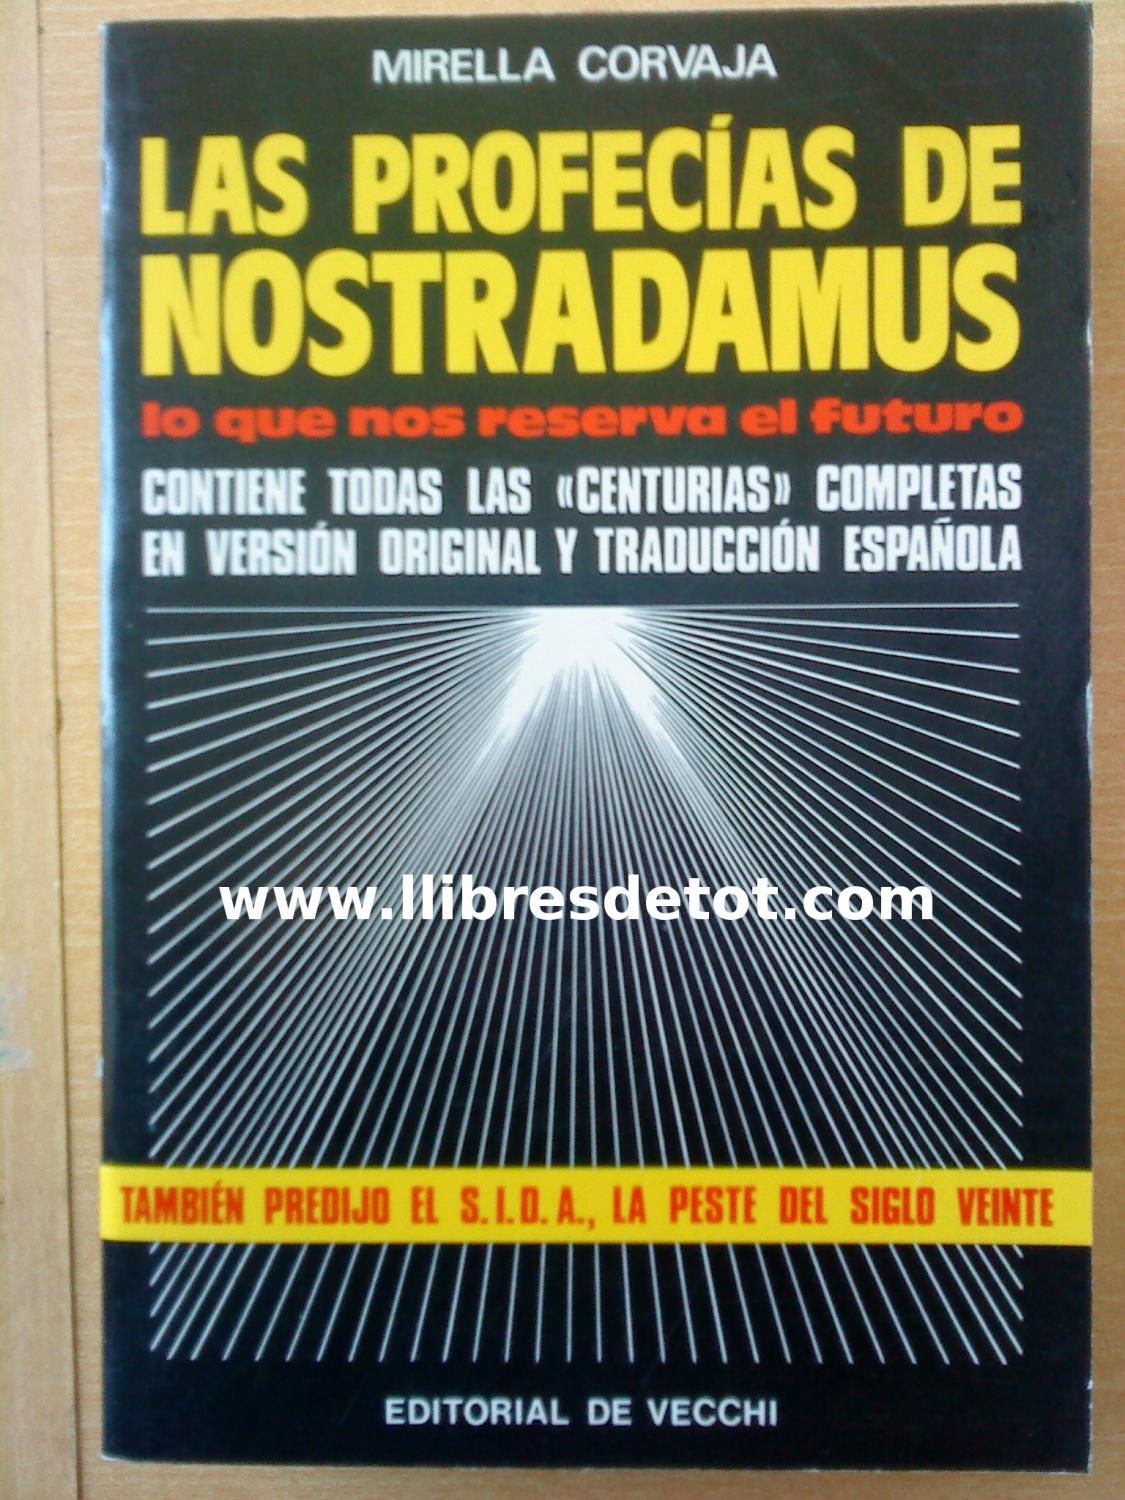 Las profecías de Nostradamus - Mirella Corvaja